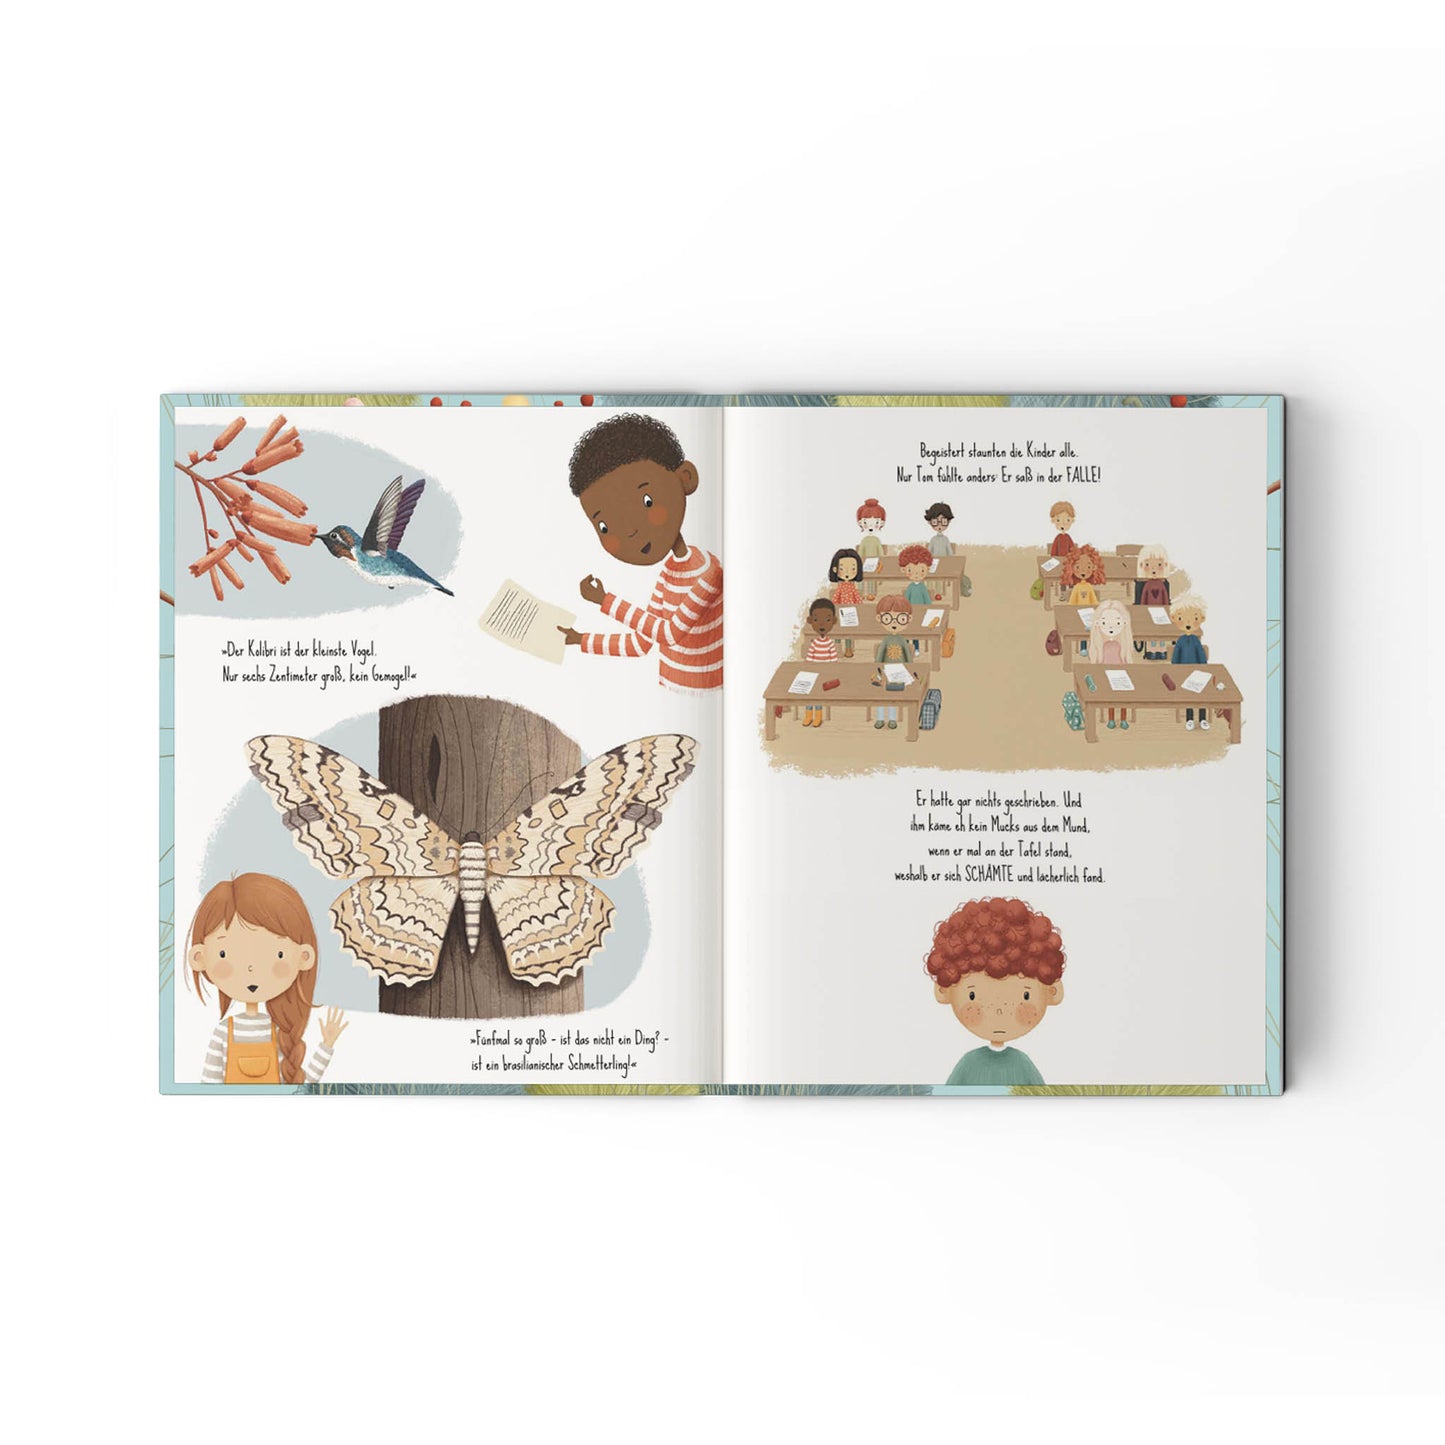 Jupitermond Verlag - Kinderbuch "Das wunderbarste Wesen der Welt" - Leja Concept Store